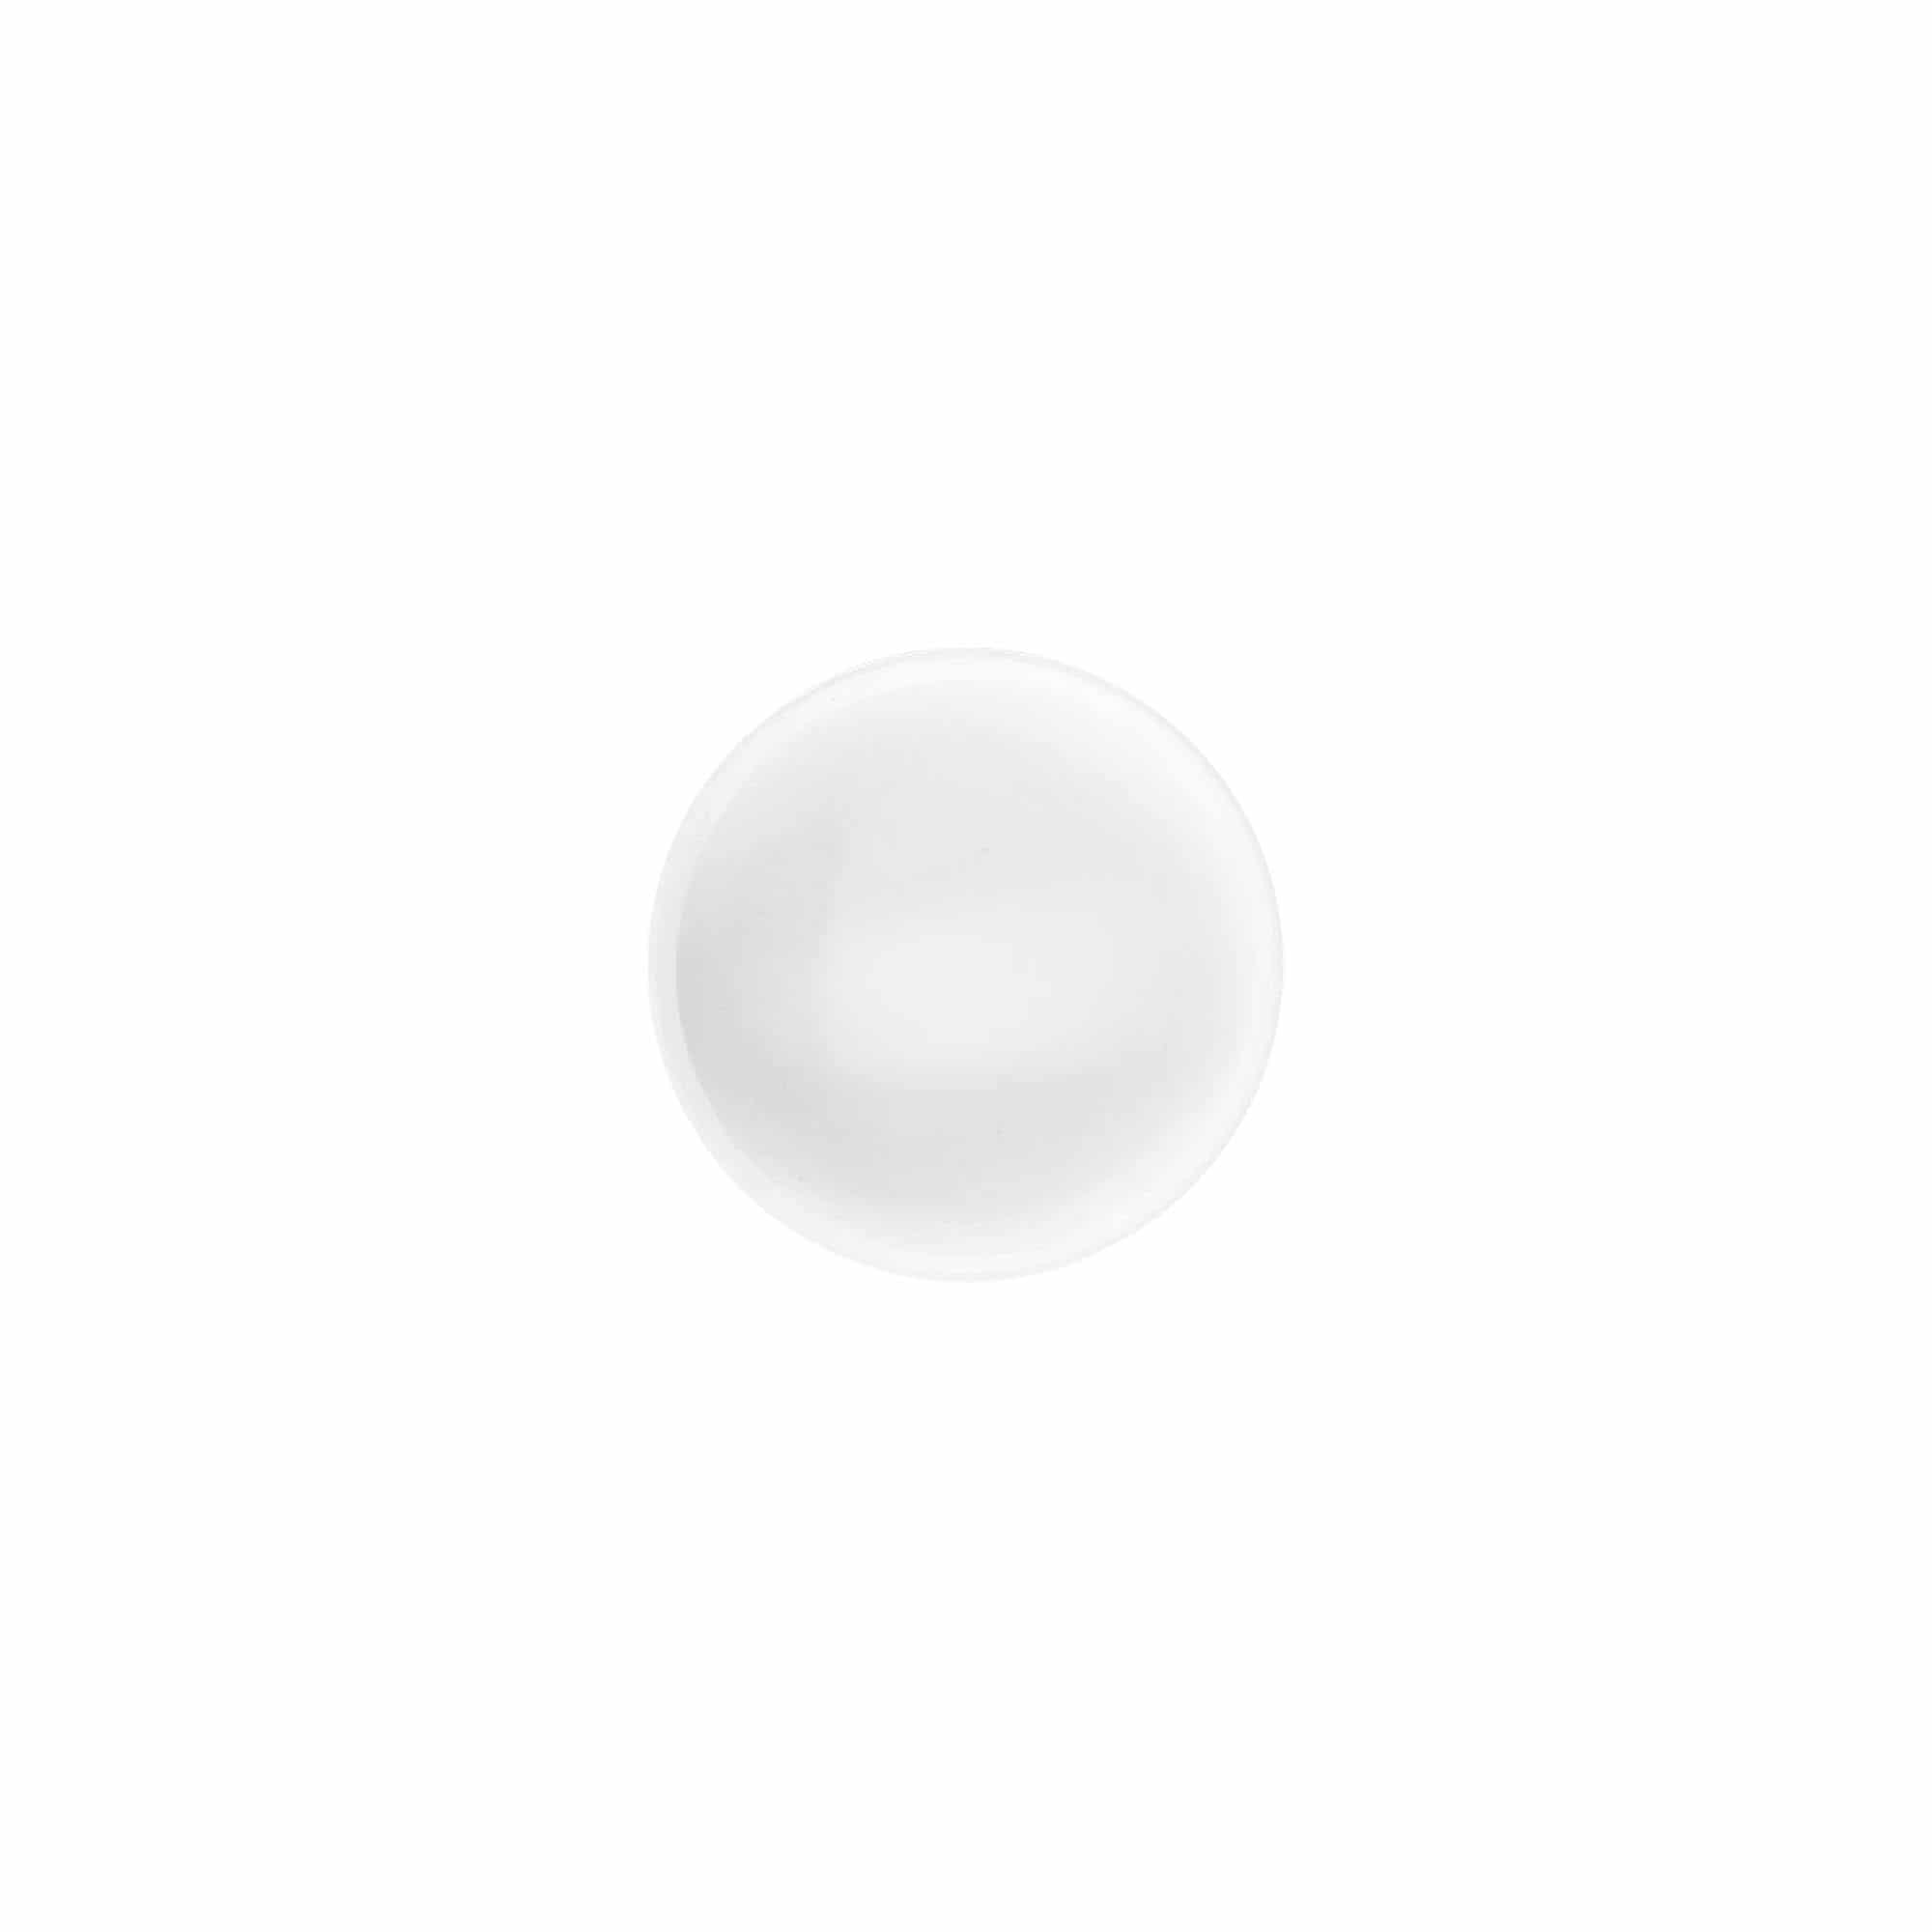 Zakrętka 'White Line' 6 ml, tworzywo sztuczne PP, kolor biały